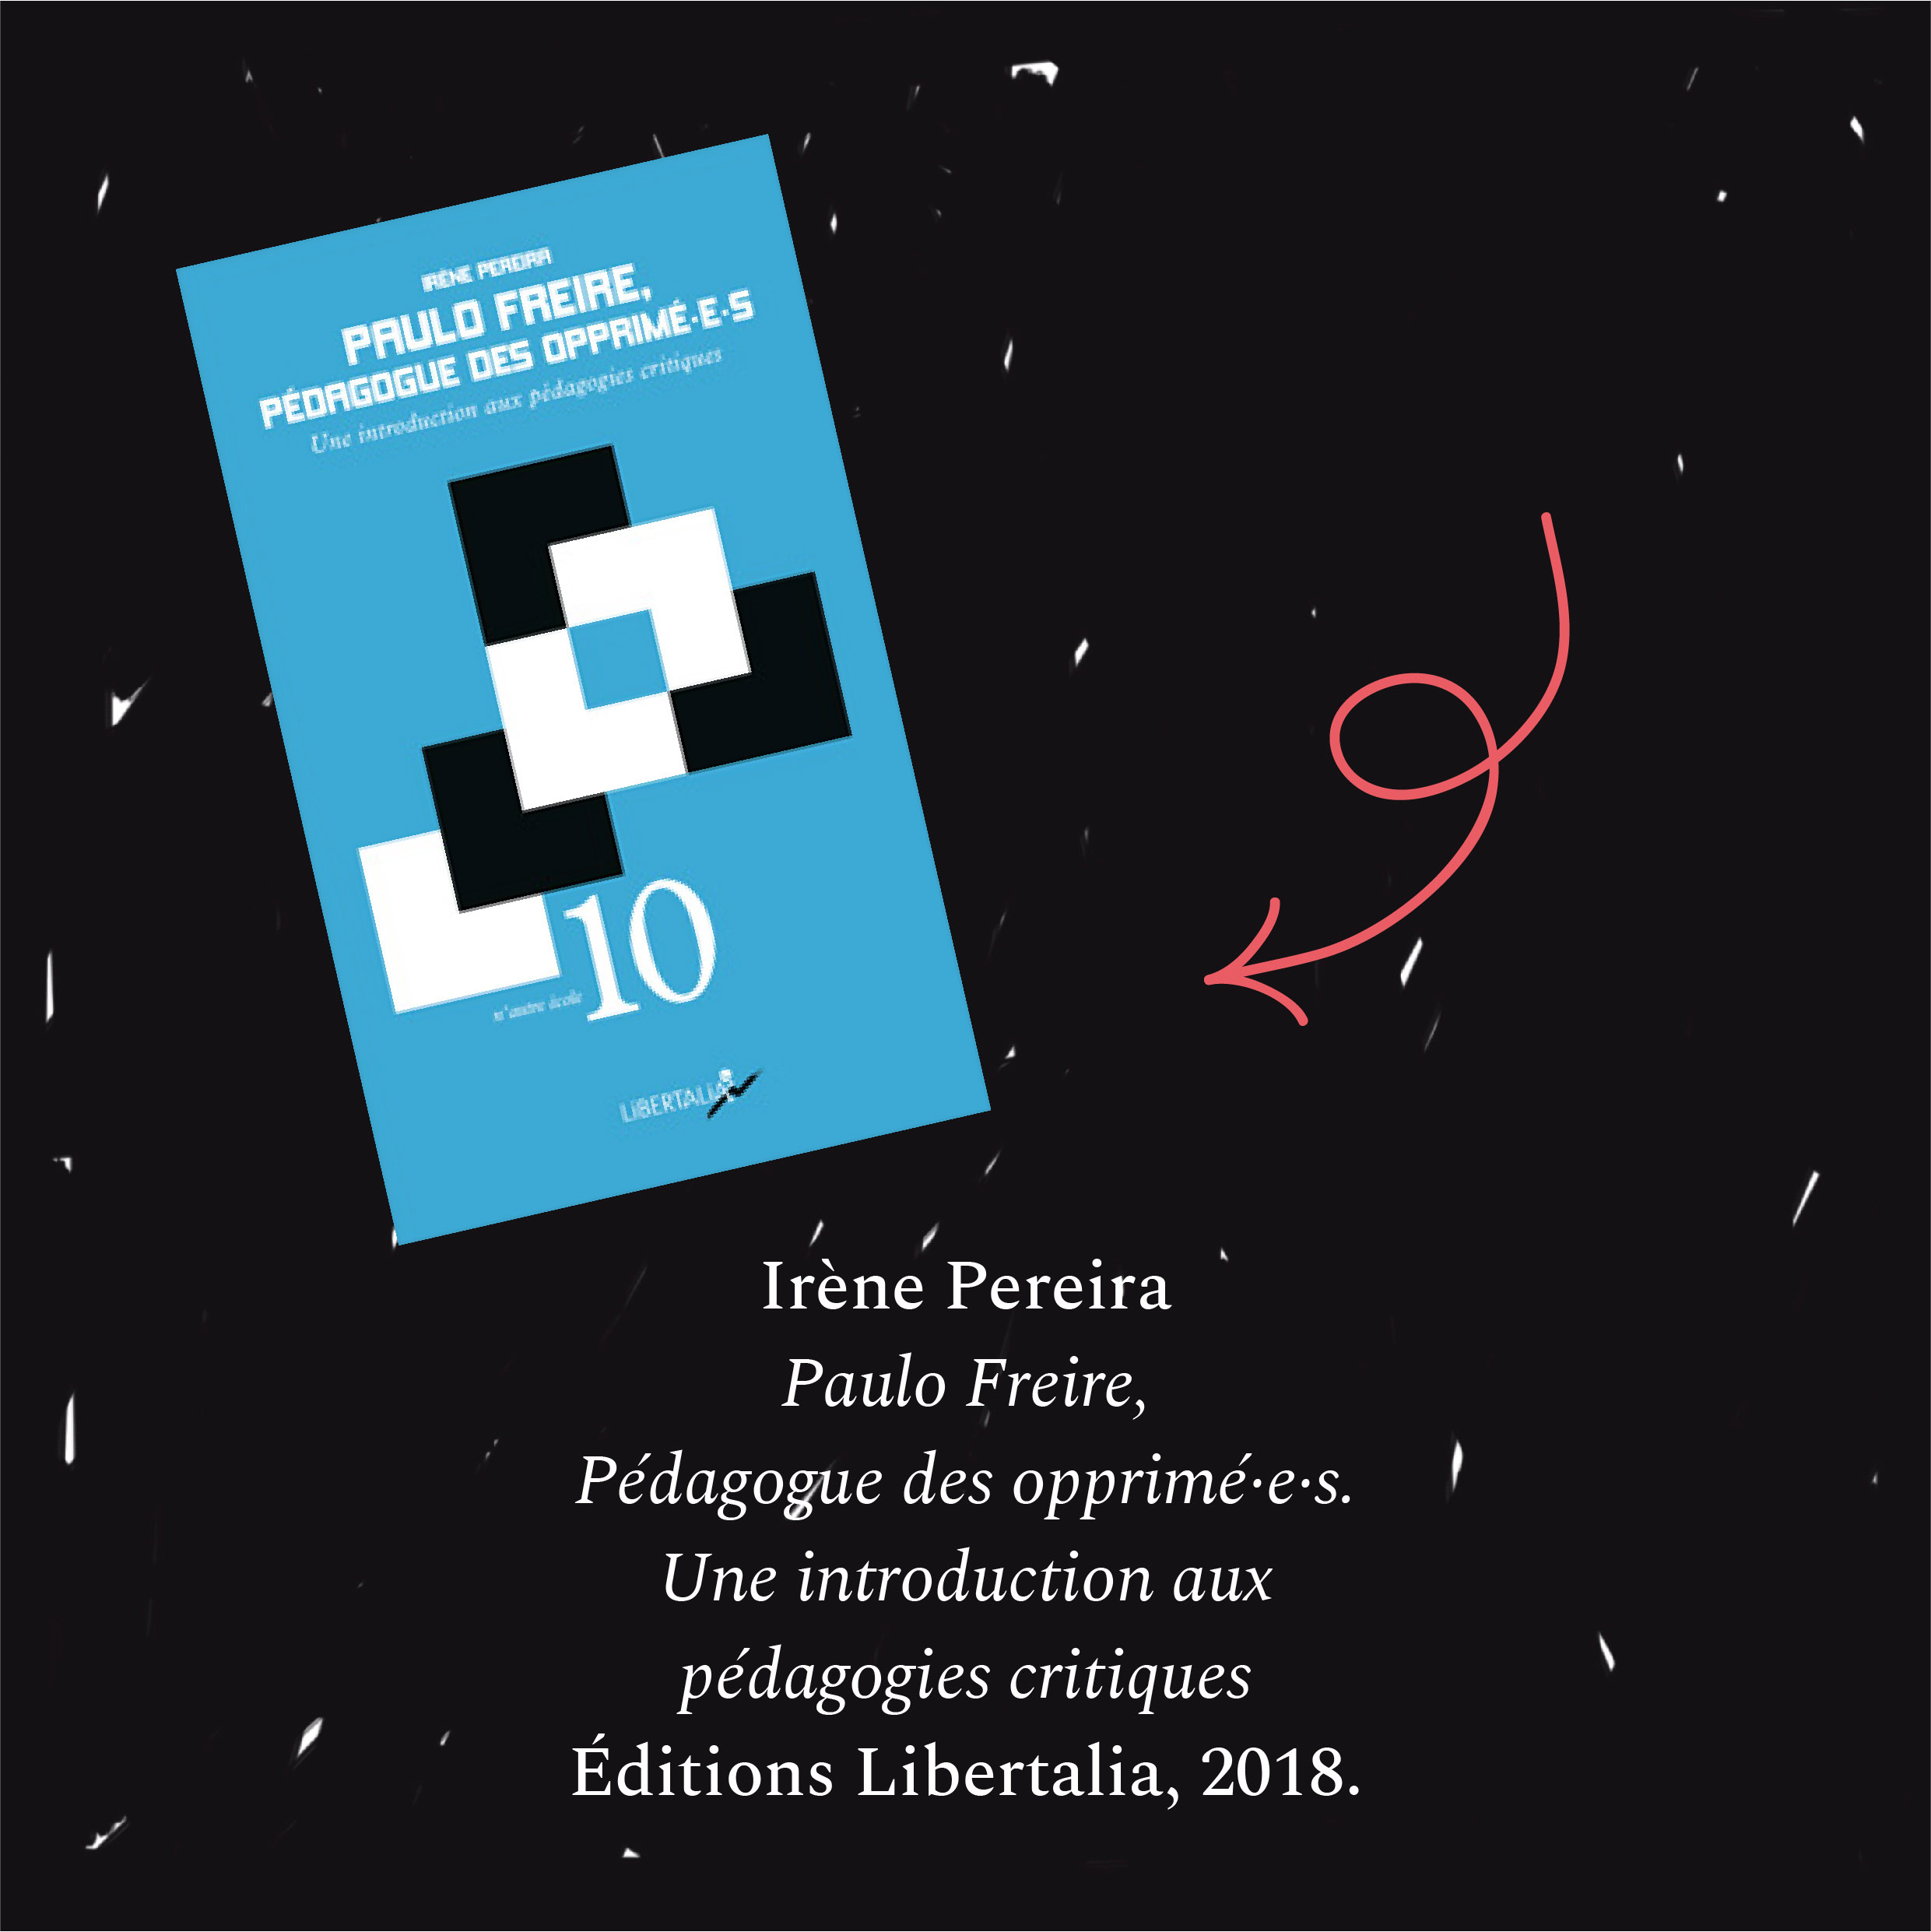 Visuels didactiques sur la pédagogie critique : ouvrage d'Irene Pereira sur la pensée de Paulo Freire